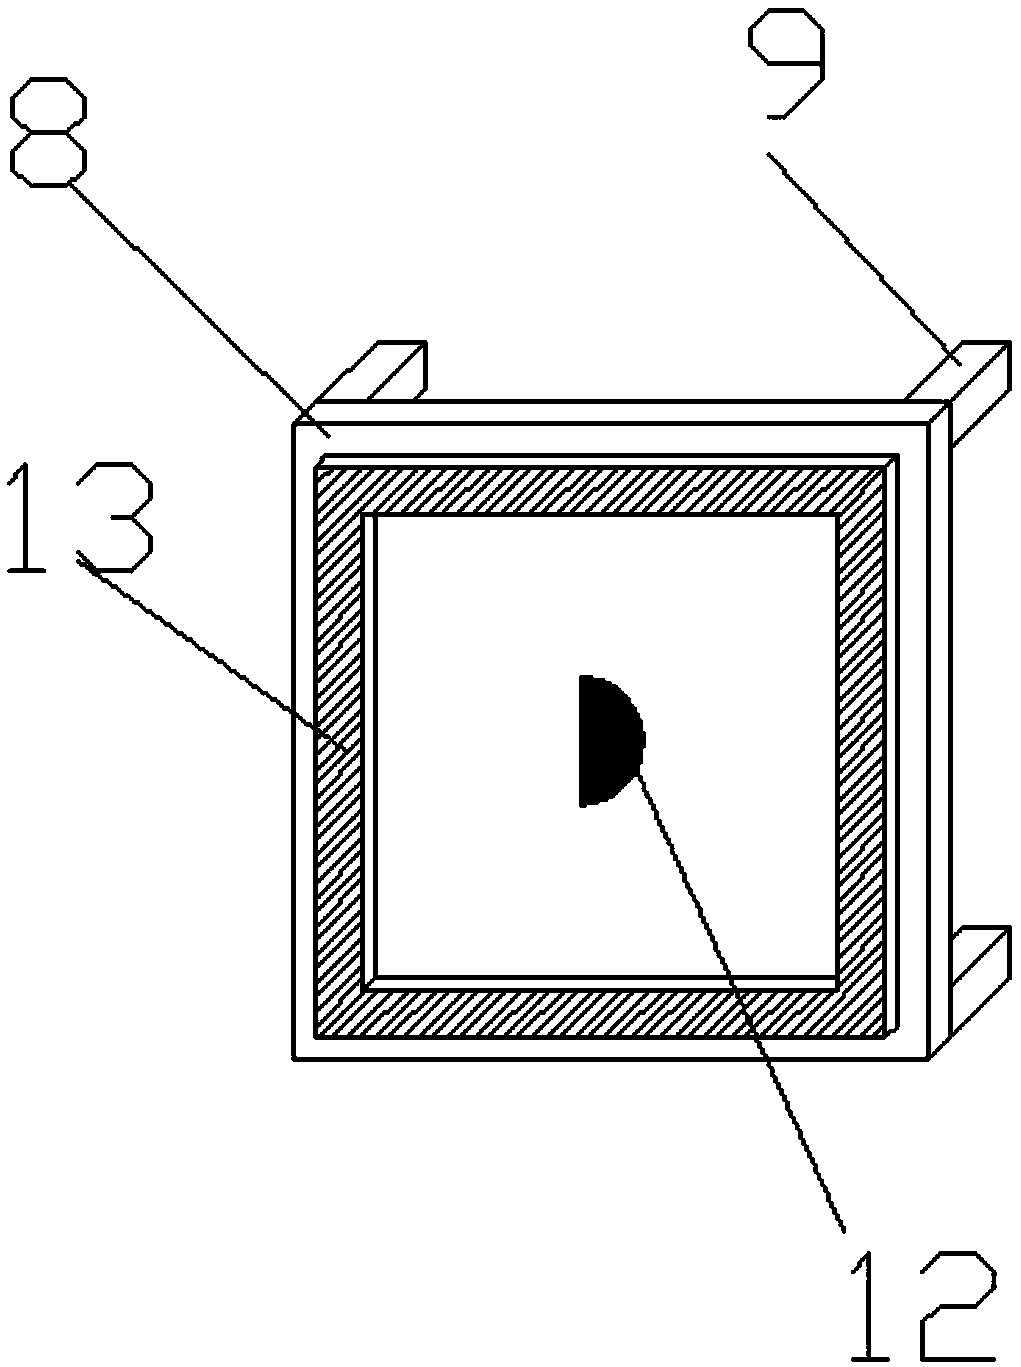 Micro-visual temperature measuring device